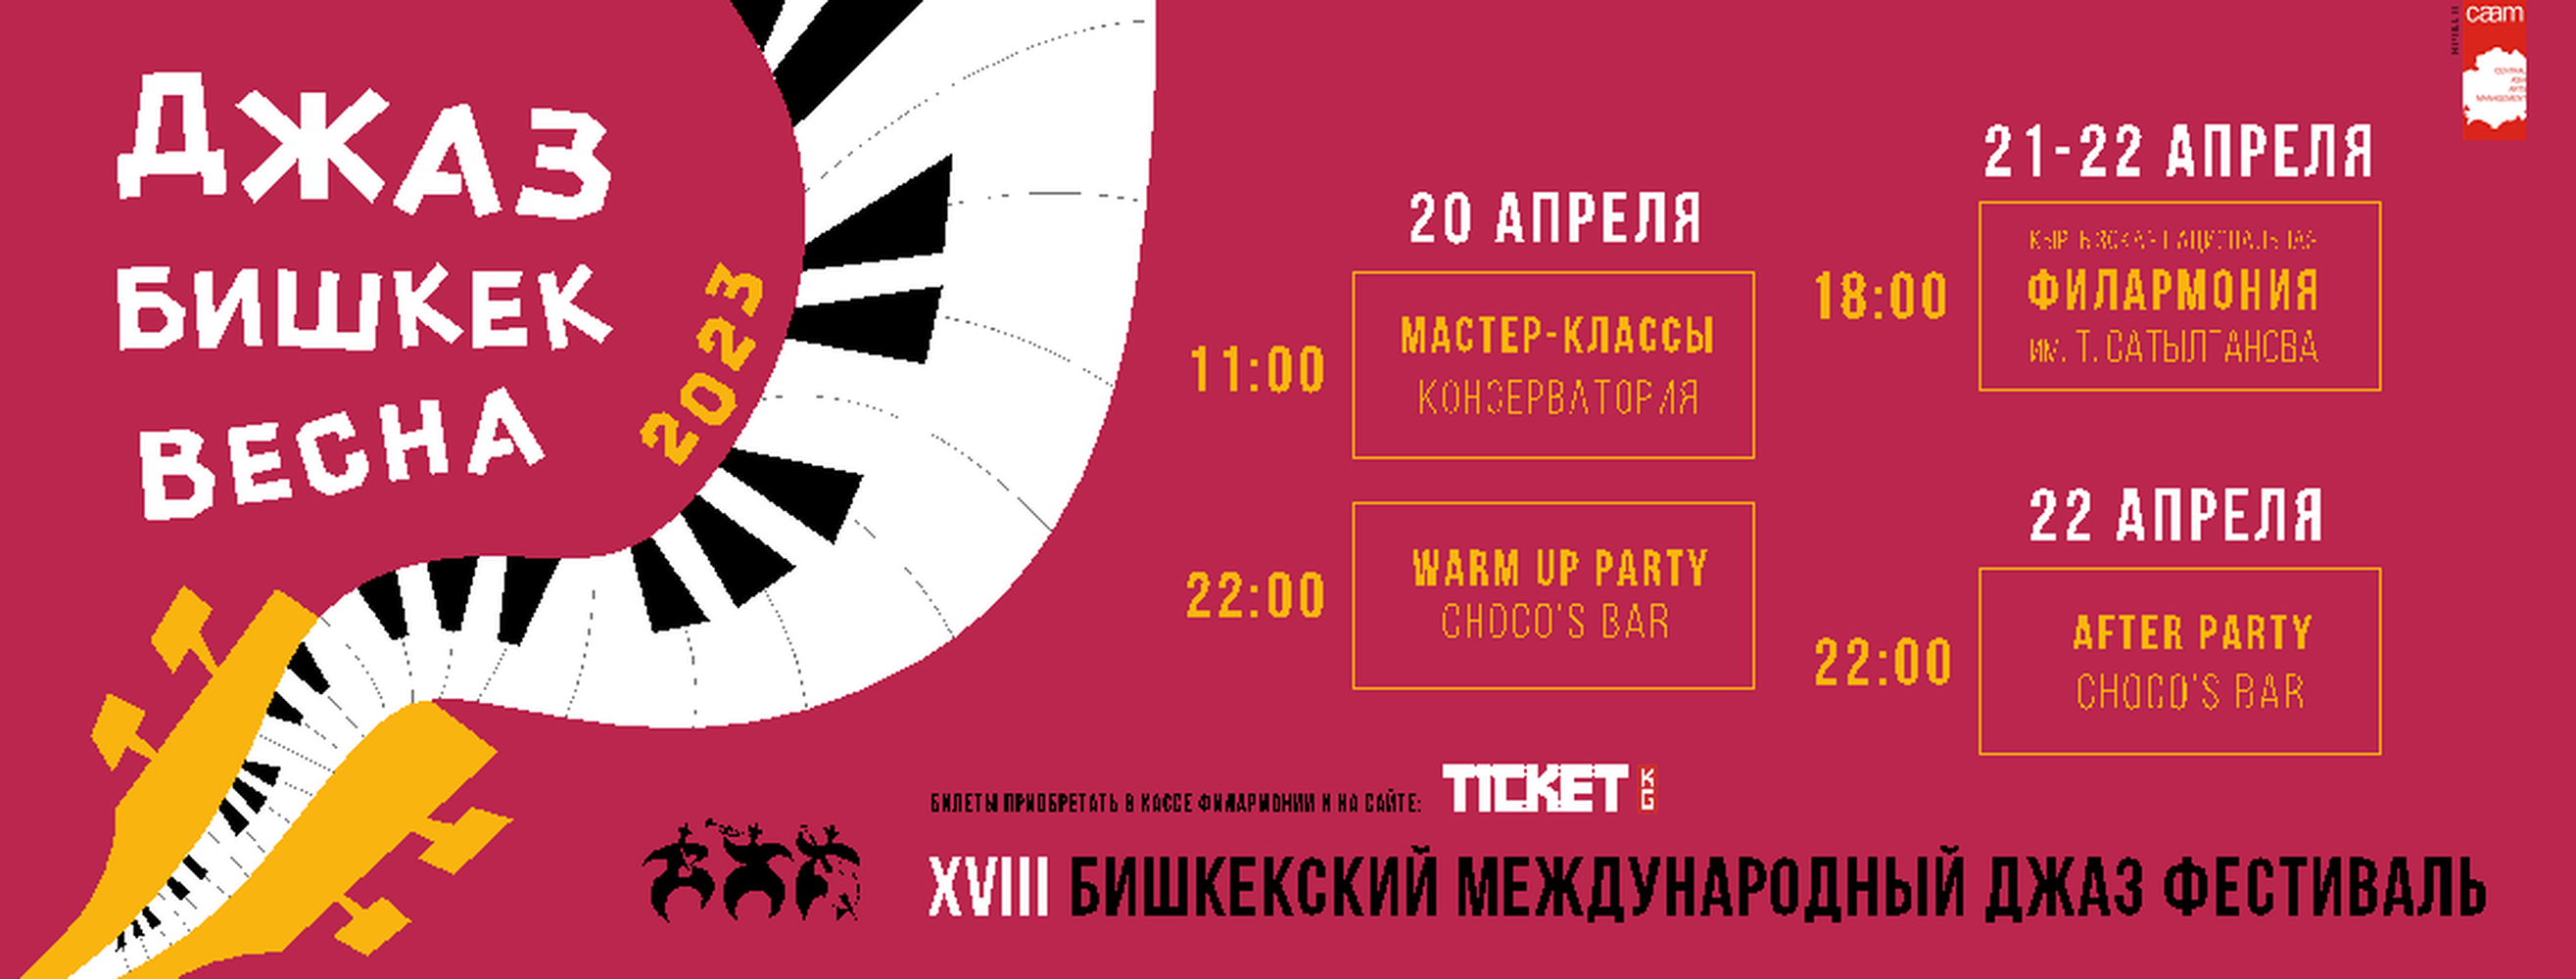 В столице в апреле пройдет фестиваль «Джаз_Бишкек_Весна» — Today.kg